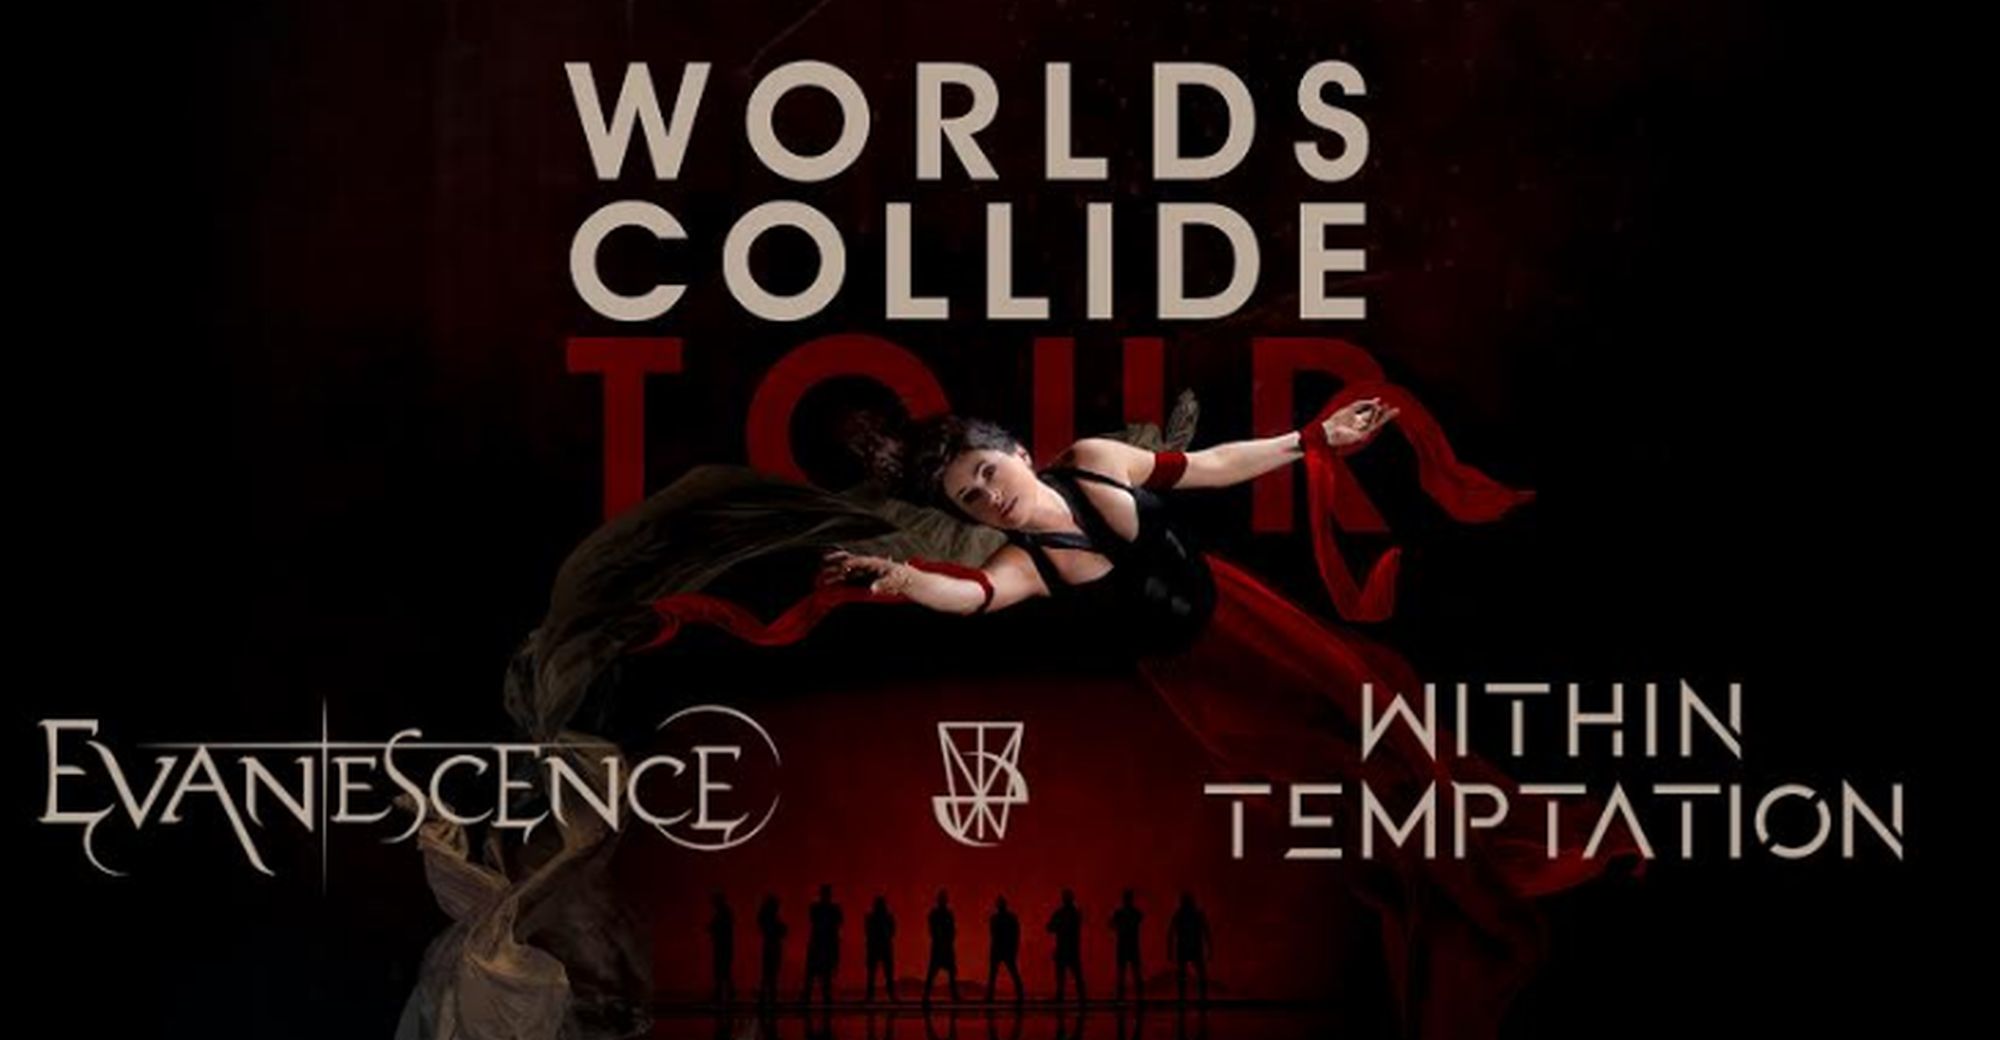 Concerto Evanescence e Within Temptation a Milano: data, biglietti, scaletta